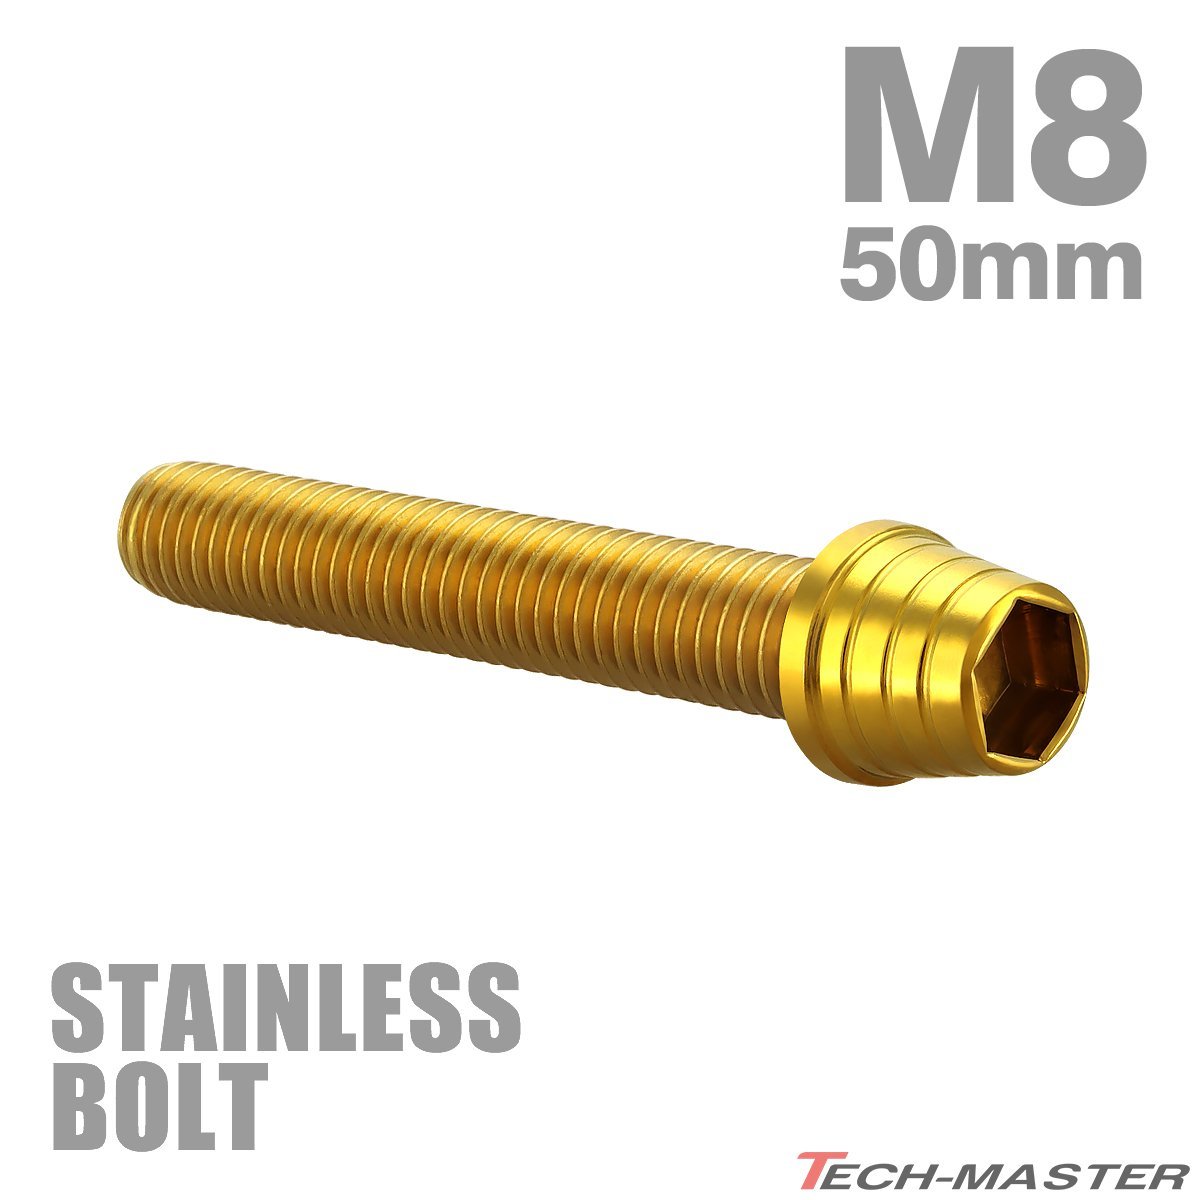 M8×50mm P1.25 キャップボルト テーパーシェルヘッド ステンレス ゴールド カウル フェンダー エンジン 車 バイク カスタム 1個 TB0336_画像1